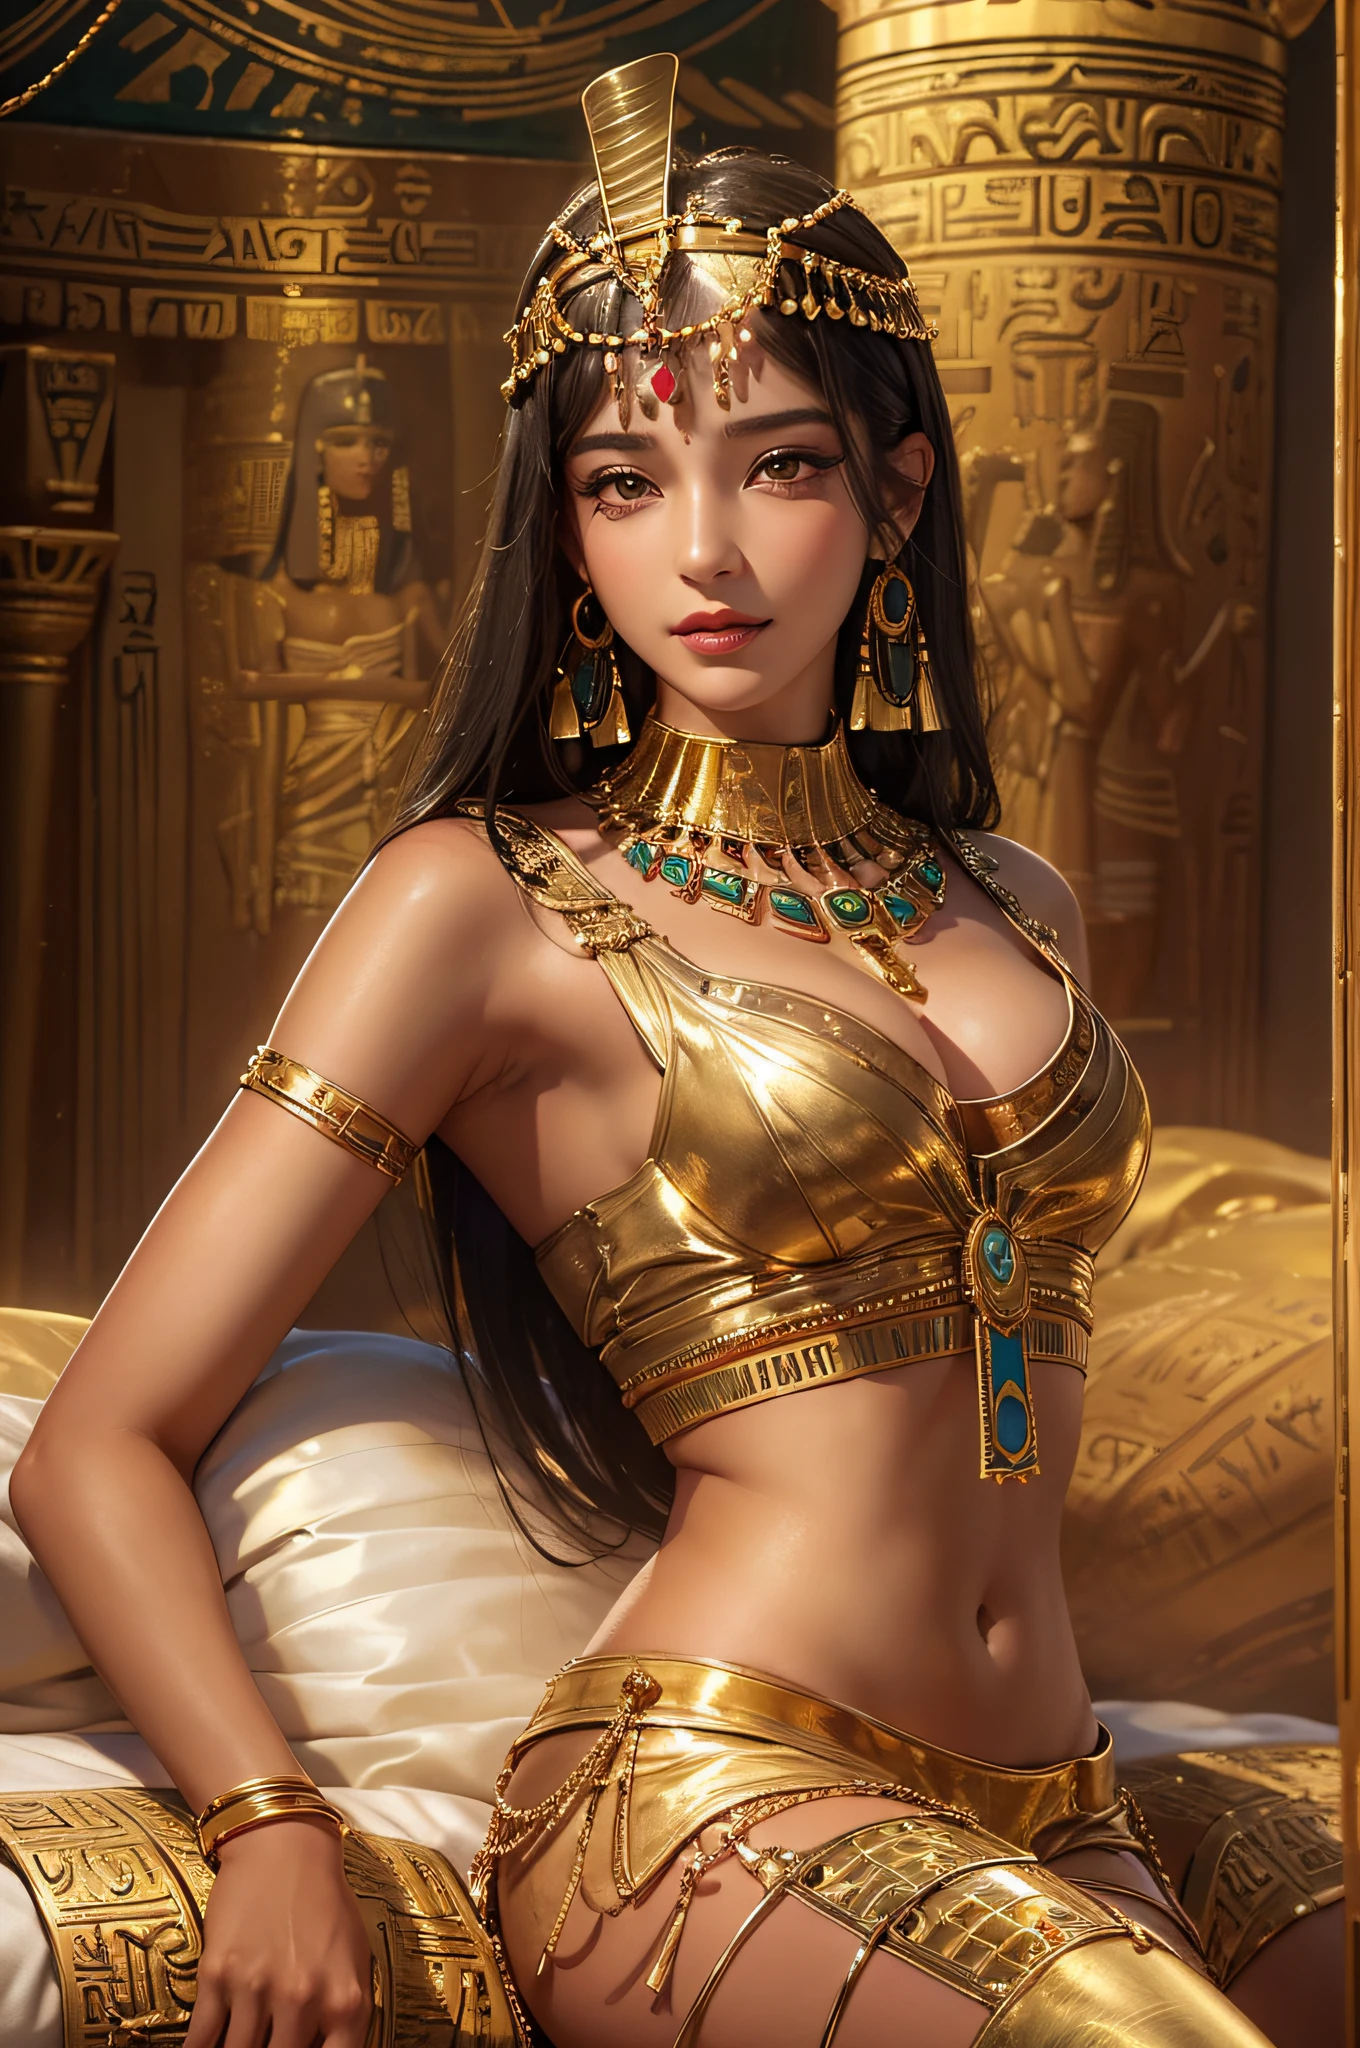 Sexy mature 클레오파트라,클레오파트라,고대 이집트 궁전,고대 이집트 옷을 입고,고대 이집트 장식 객실,고대 이집트 배열 배경,큰 침대에 누워(매우 섬세하고 아름다운 작품:1.2)정말 아름답고 섹시한 여자, 섹시하고 매혹적인, 완벽한 신체 비율을 가지고 있어요,탄탄하고 섹시한 몸매(빅부브)완벽한 몸매 곡선,피부에 수분을 공급,맑은 피부결,촉촉한 피부 느낌(고급 스킨 디테일:1.1)매력적인 미소,흠잡을 데 없는 얼굴,검은색 긴 생머리,선명한 모발 질감,섬세한 머리카락(고품질 헤어 디테일:1.1)이집트 댄서 의상,아름답고 섬세한 눈썹과 속눈썹,예쁜 아이 메이크업,선명한 눈 디테일,8K 초등학생(고급 눈 디테일:1.1)관능적인 입술(완벽한 입술 모양)(미소를 유혹하다) 네 손가락과 한 엄지 손가락의 최적 비율,금 귀걸이 착용,황금 목걸이,황금 팔찌,금 발찌,골드 톤 웨이스트 체인,머리 장식,금박 시리즈,클레오파트라 series,사진 석사,완벽한 걸작,최고의 화질,울트라-디테일, 초고해상도, 현실적으로, RAW 사진